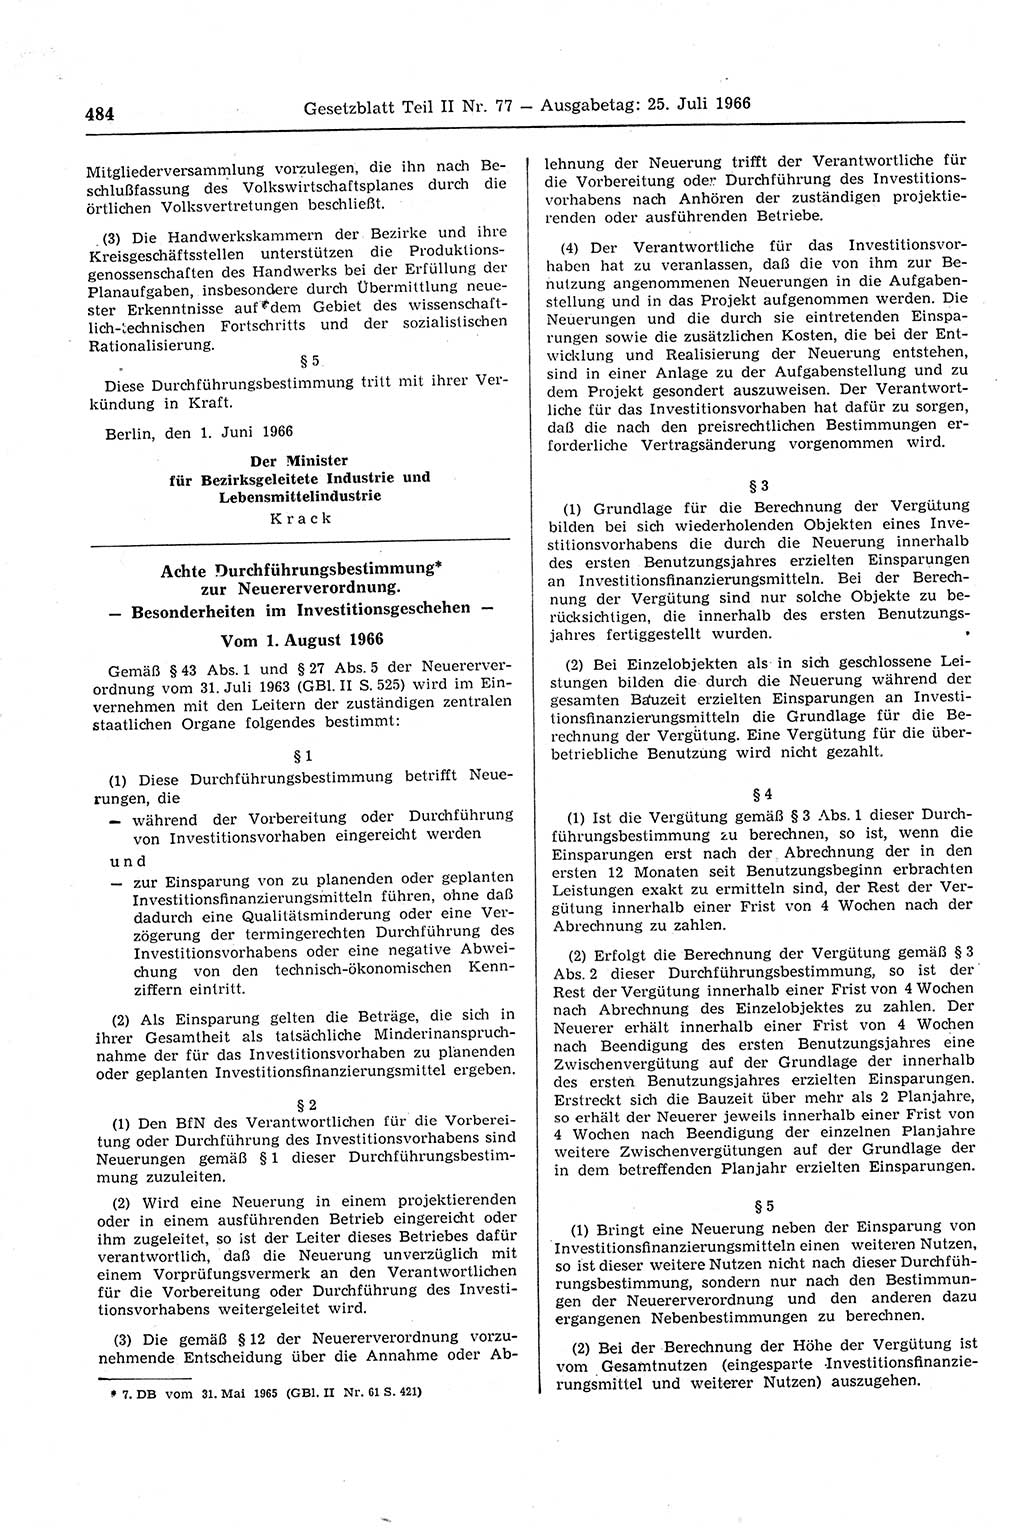 Gesetzblatt (GBl.) der Deutschen Demokratischen Republik (DDR) Teil ⅠⅠ 1966, Seite 484 (GBl. DDR ⅠⅠ 1966, S. 484)